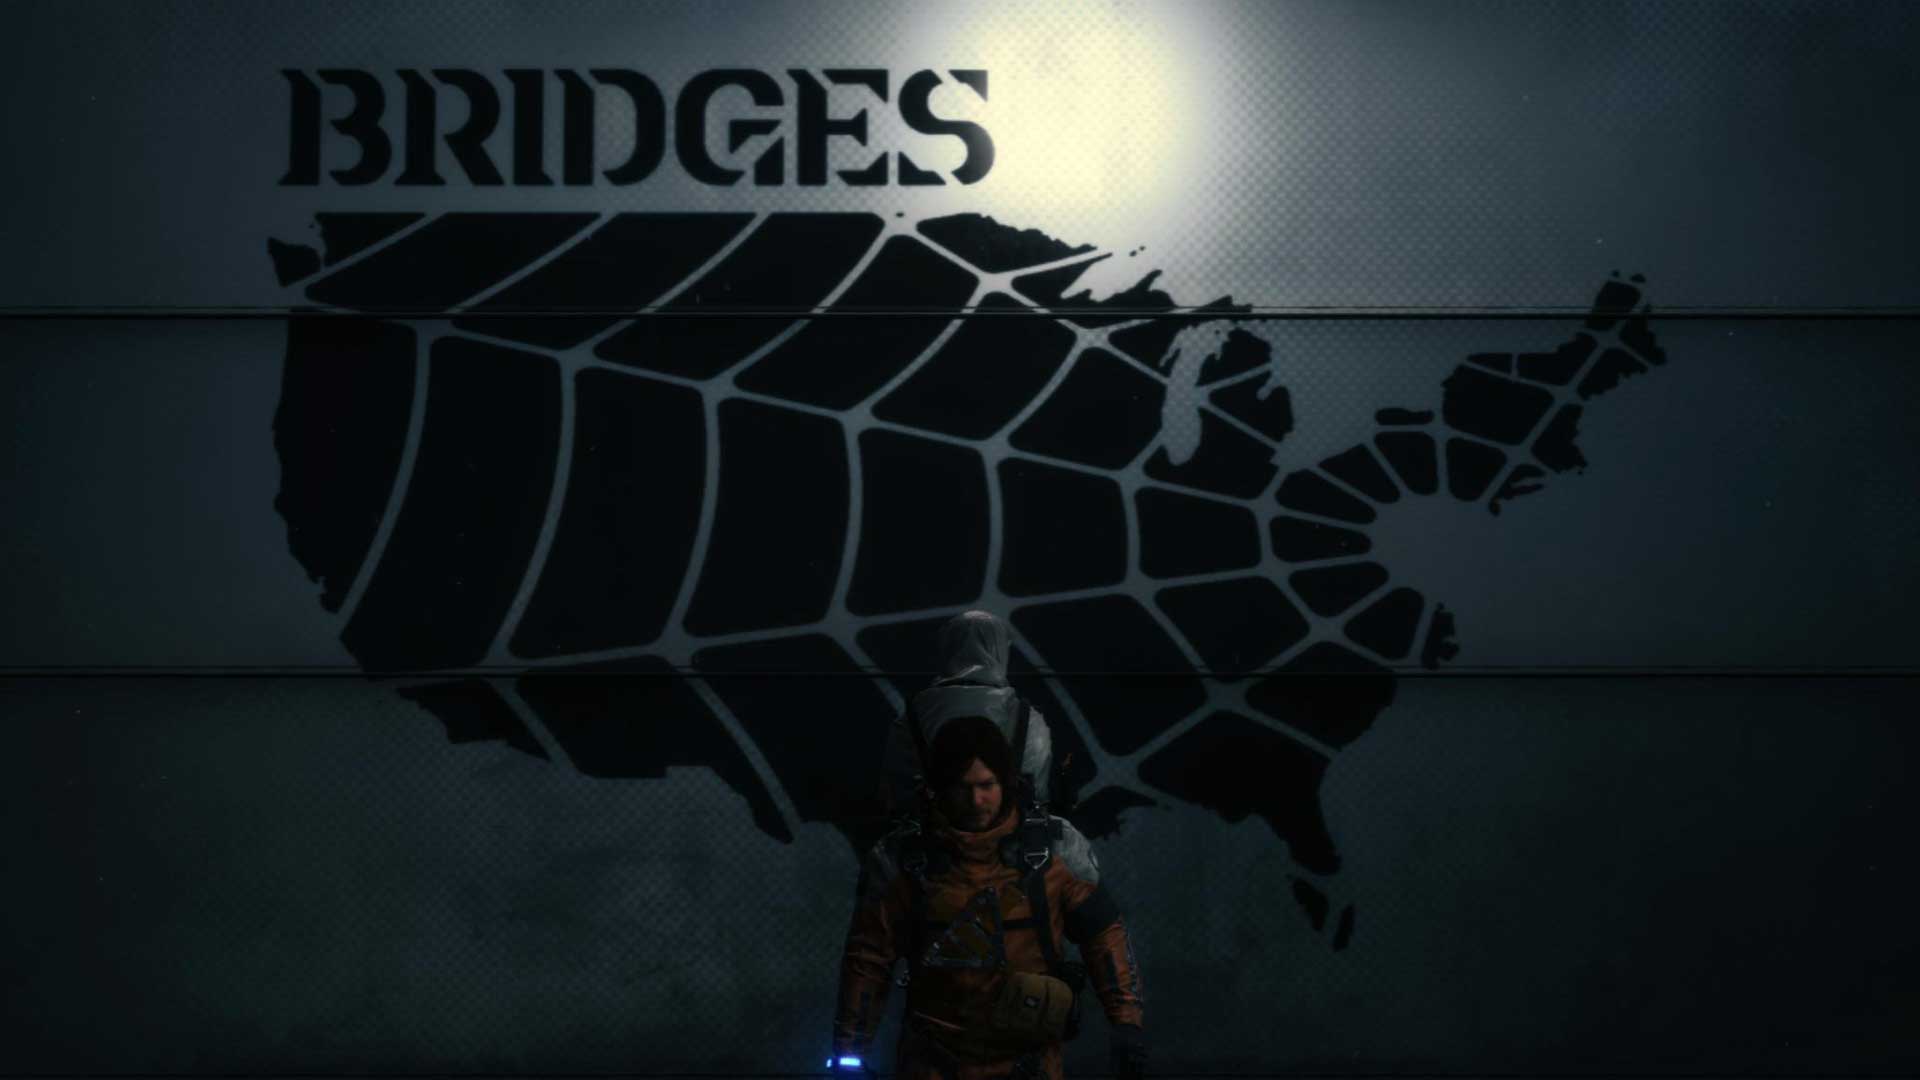 نقشه آمریکا خیالی در بازی Death Stranding استودیو کوجیما پروداکشنز با حضور نورمن ریداس در نقش اصلی